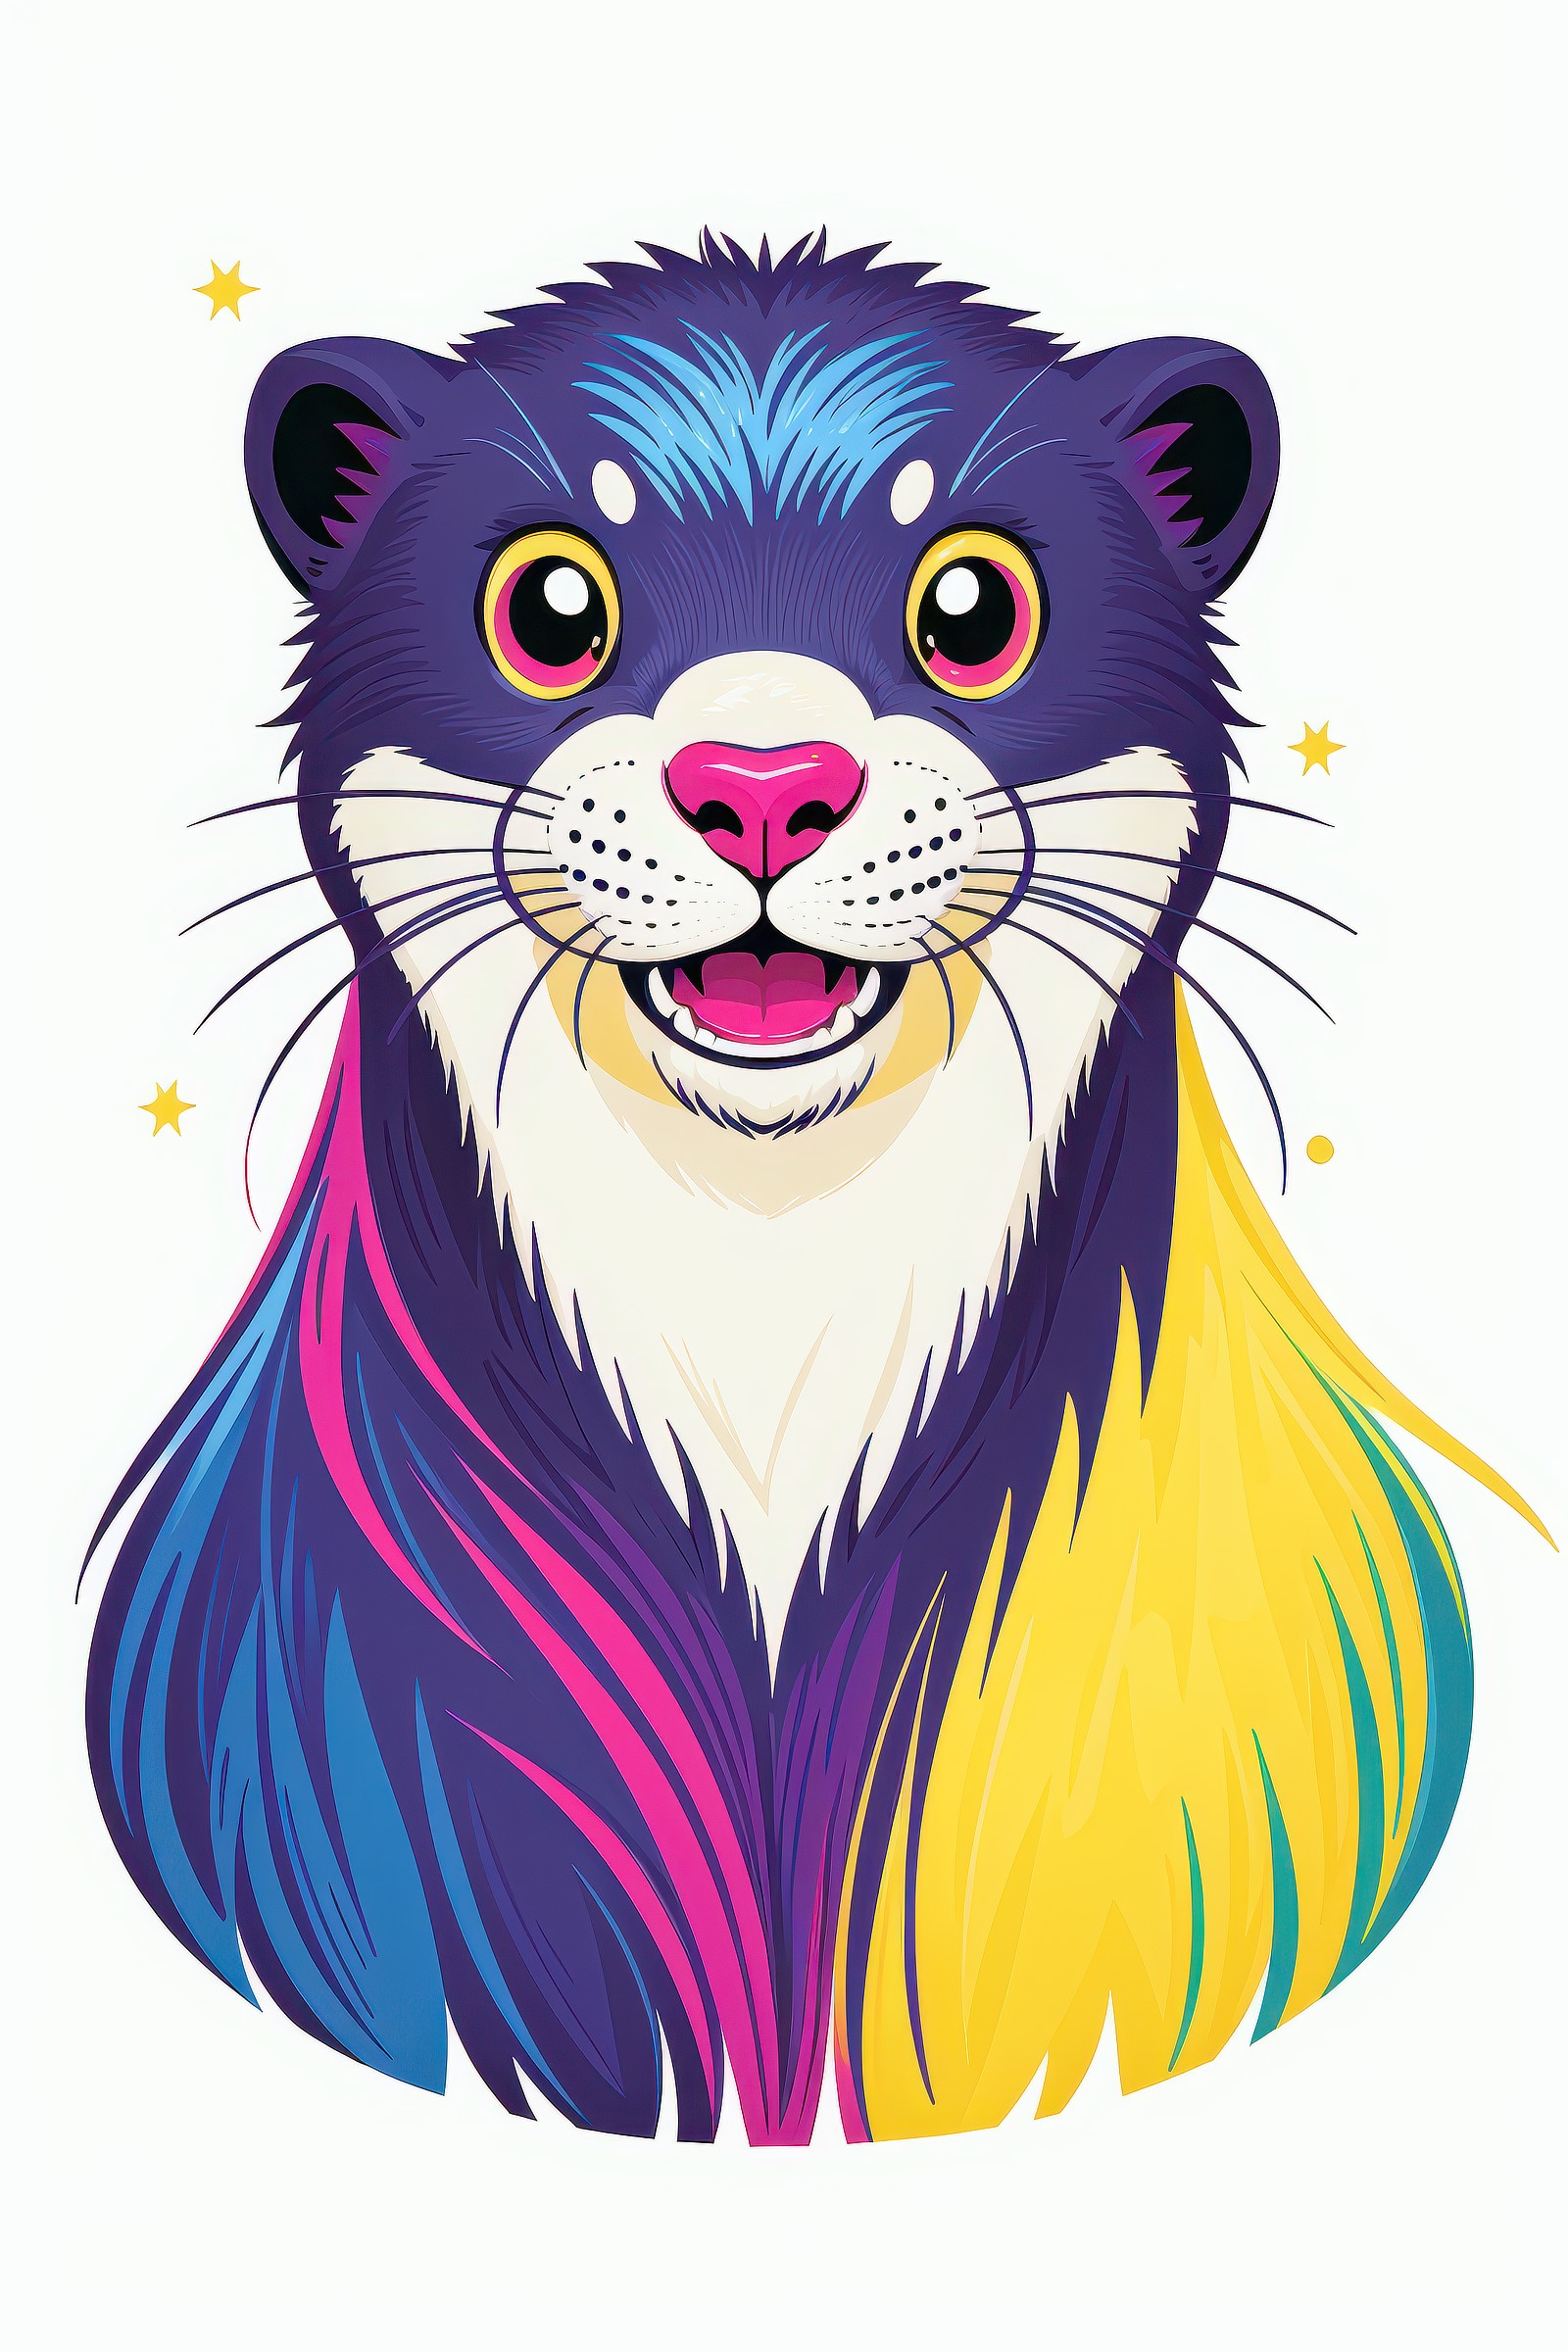 (Colorful:2.0) otter, otter Portrait, otter Sticker Clip art, (illustration:1.5), (vector art:1.5) BREAK plain white backg...